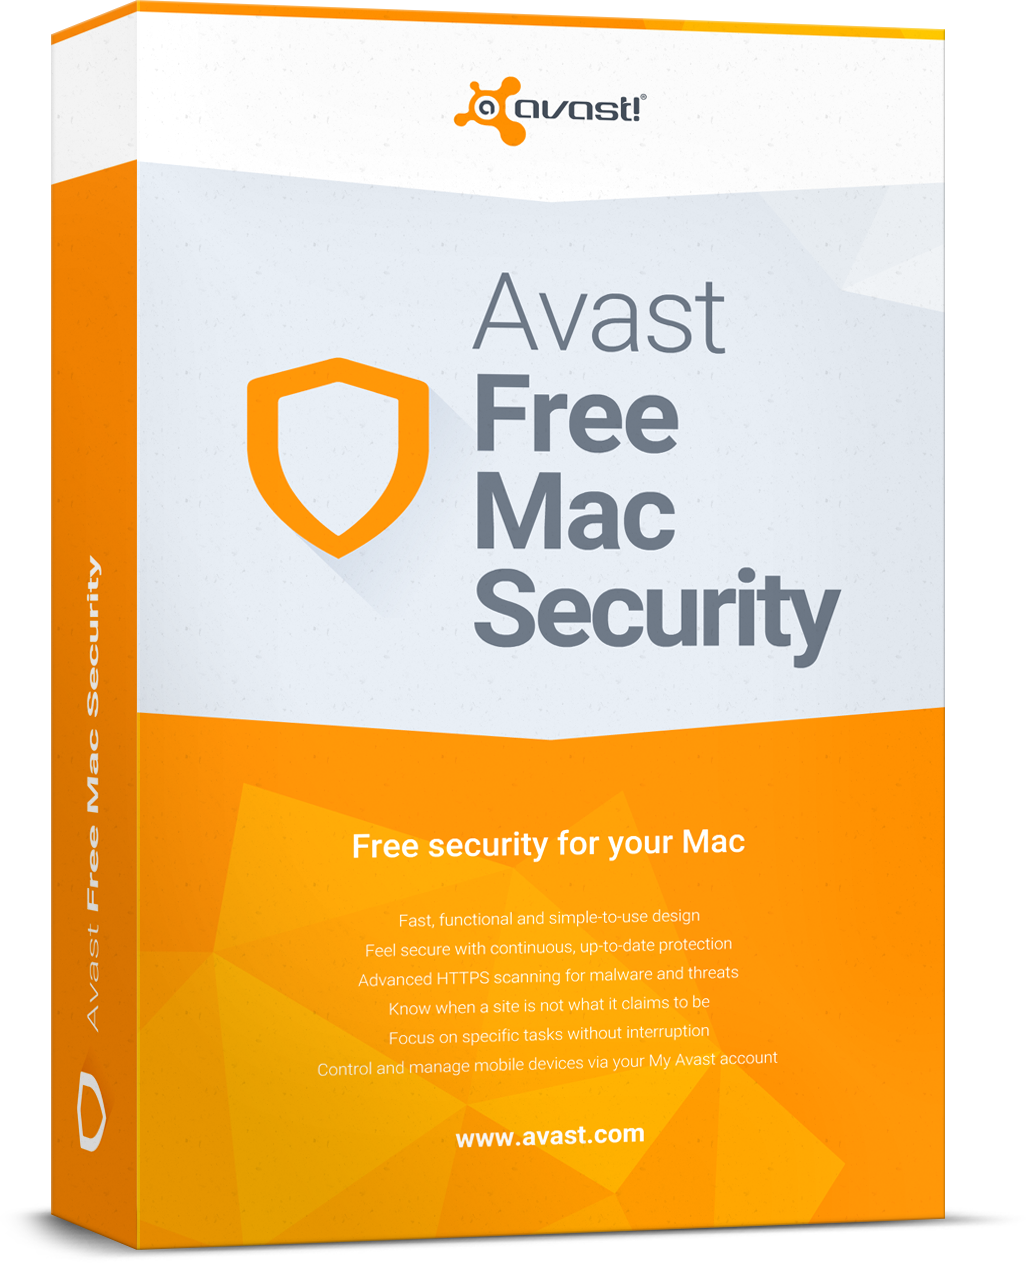 Avast Free Mac Security (Avast)